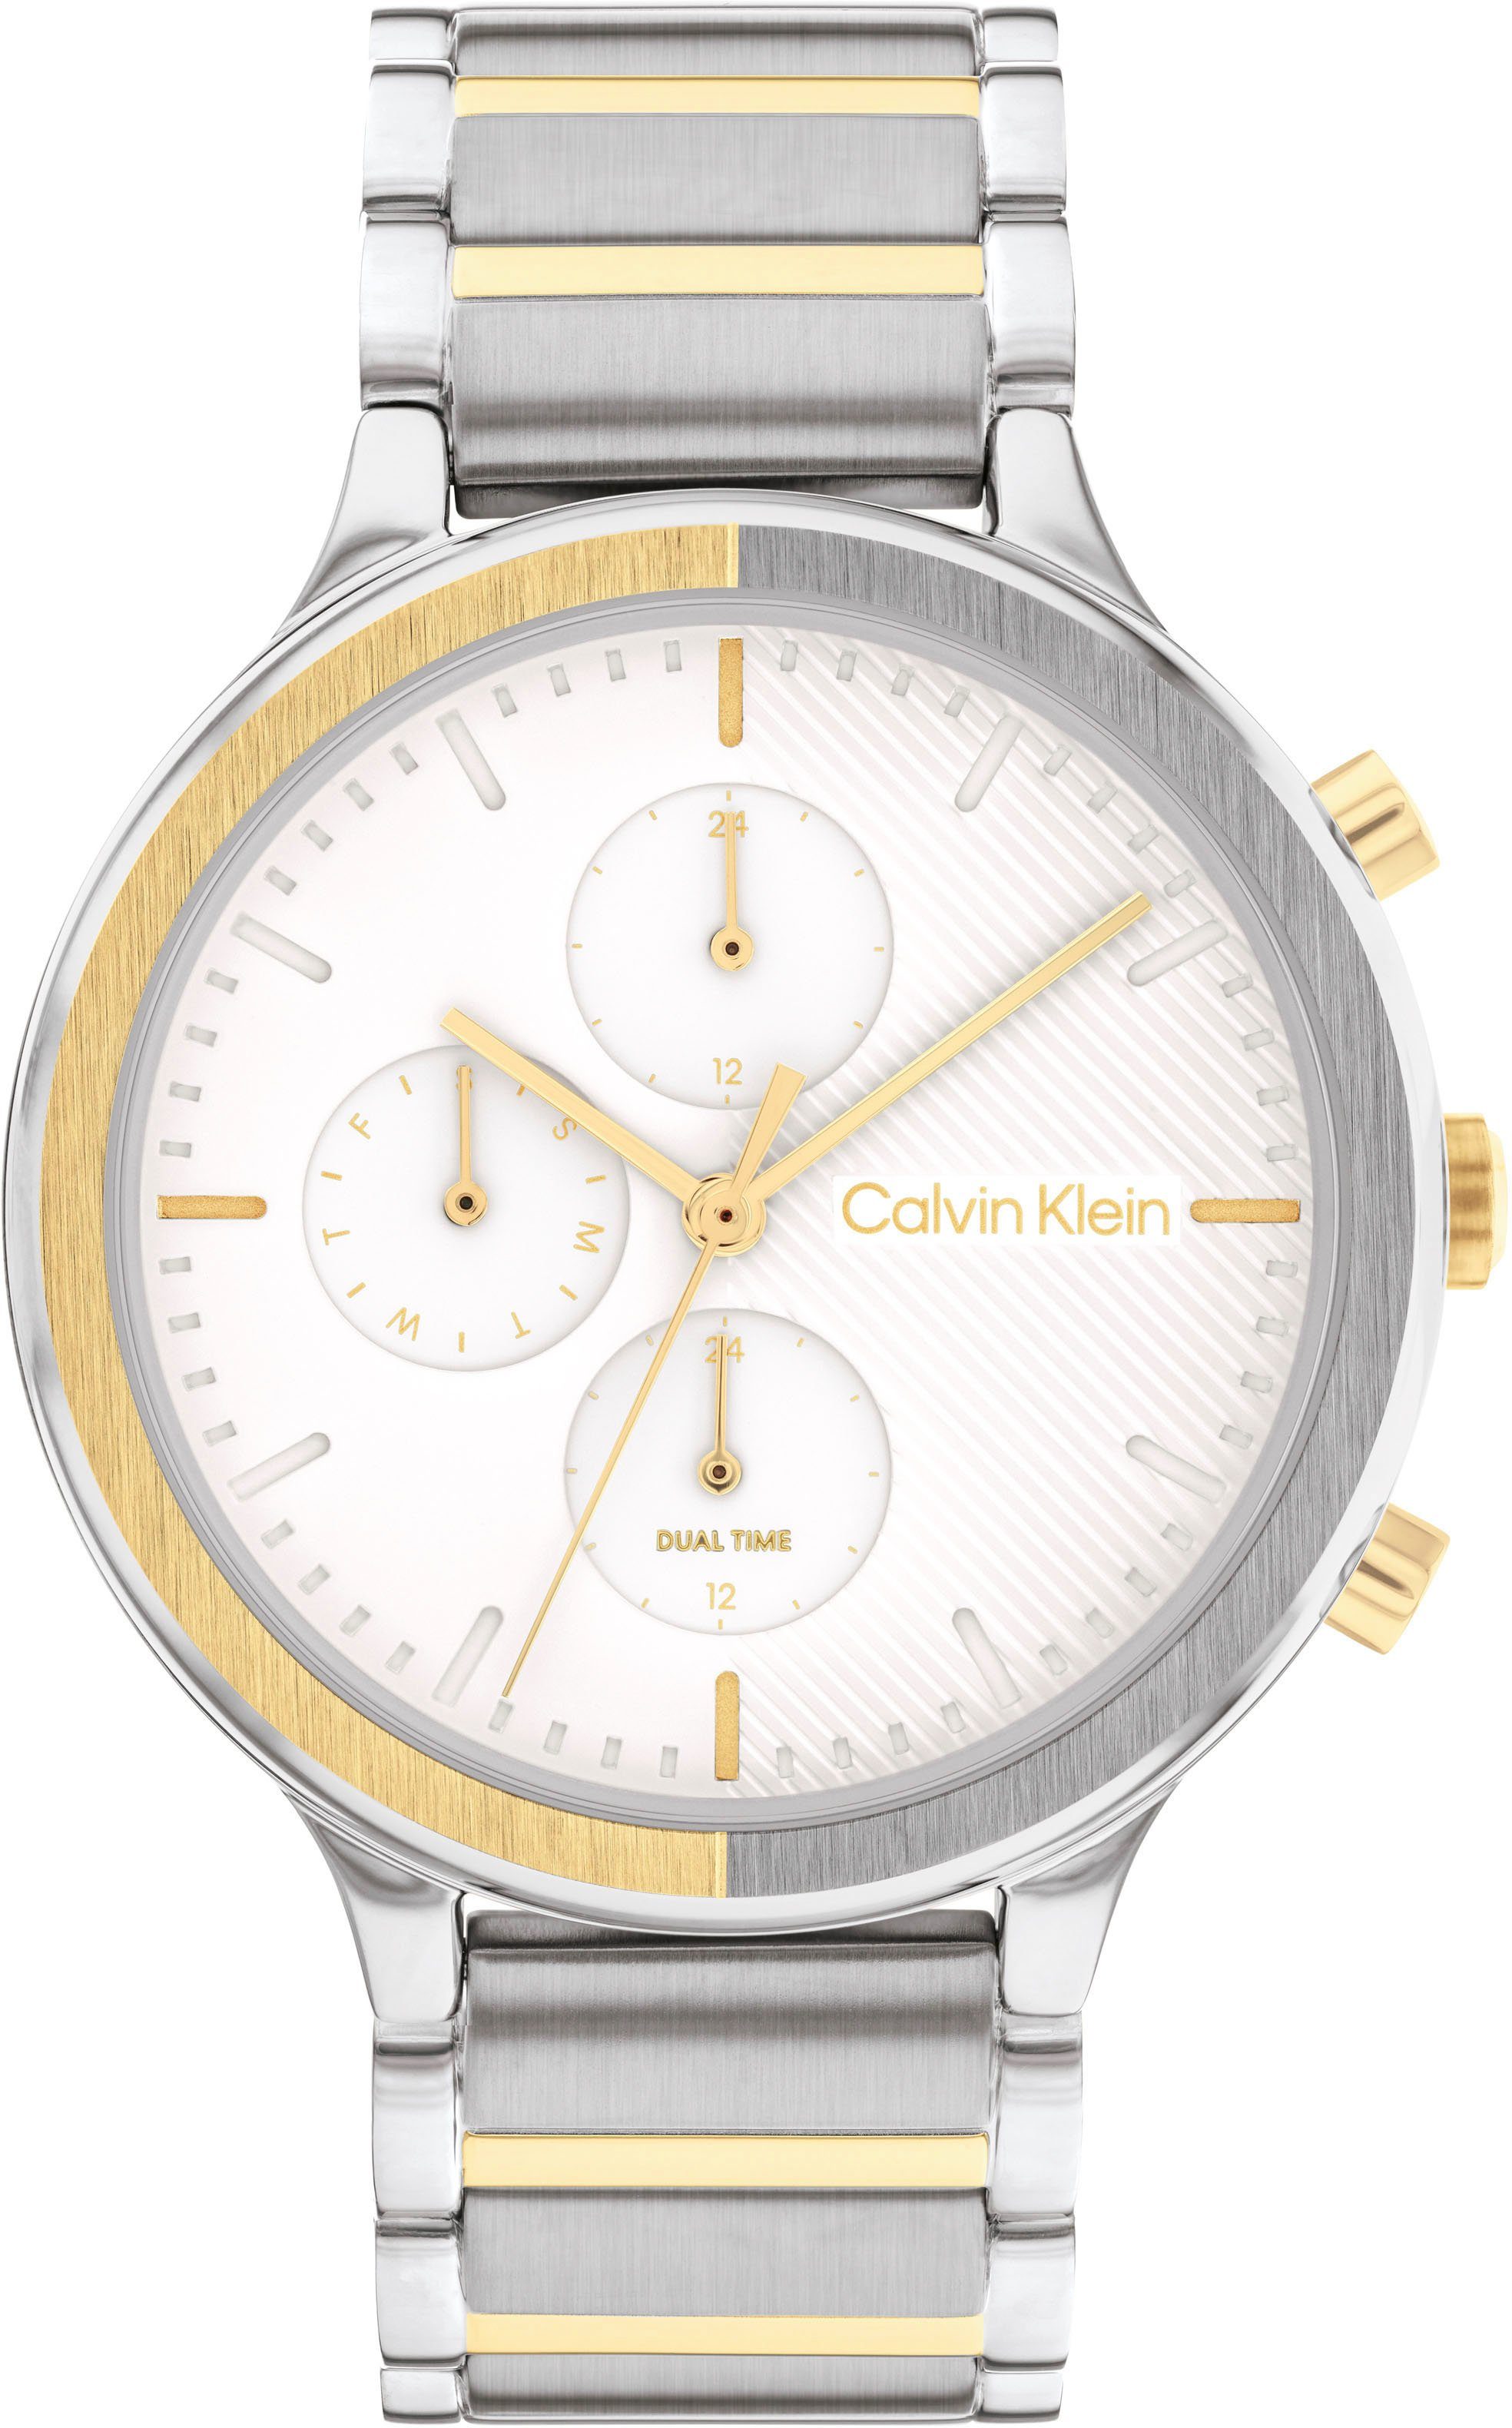 Calvin Klein Multifunktionsuhr SPORT, 25200239, Quarzuhr, Armbanduhr, Damenuhr, Datum, 12/24-Stunden-Anzeige